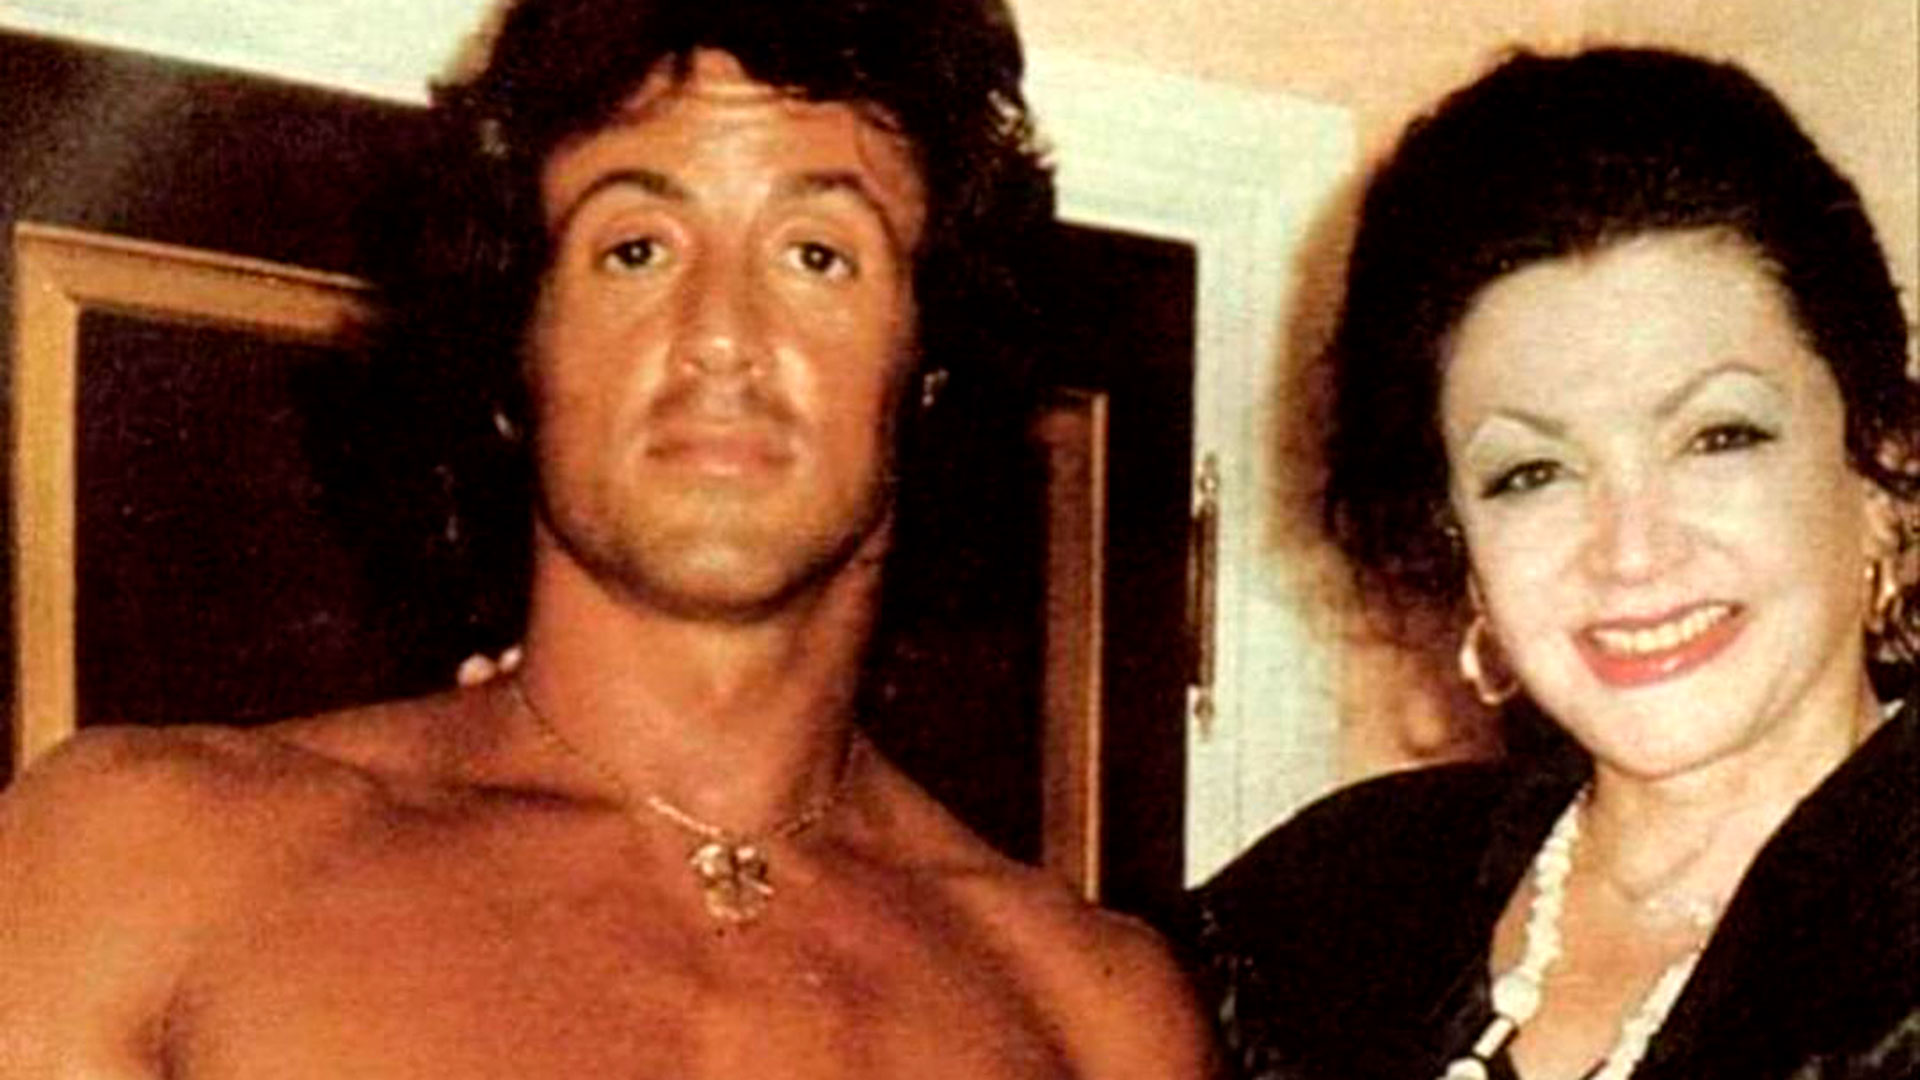 Jackie Stallone, la estrafalaria madre de Sly que tuvo sus minutos de fama unas décadas atrás con sus extrañas prácticas y las peleas públicas con su ex marido
(@officialjackiestallone)